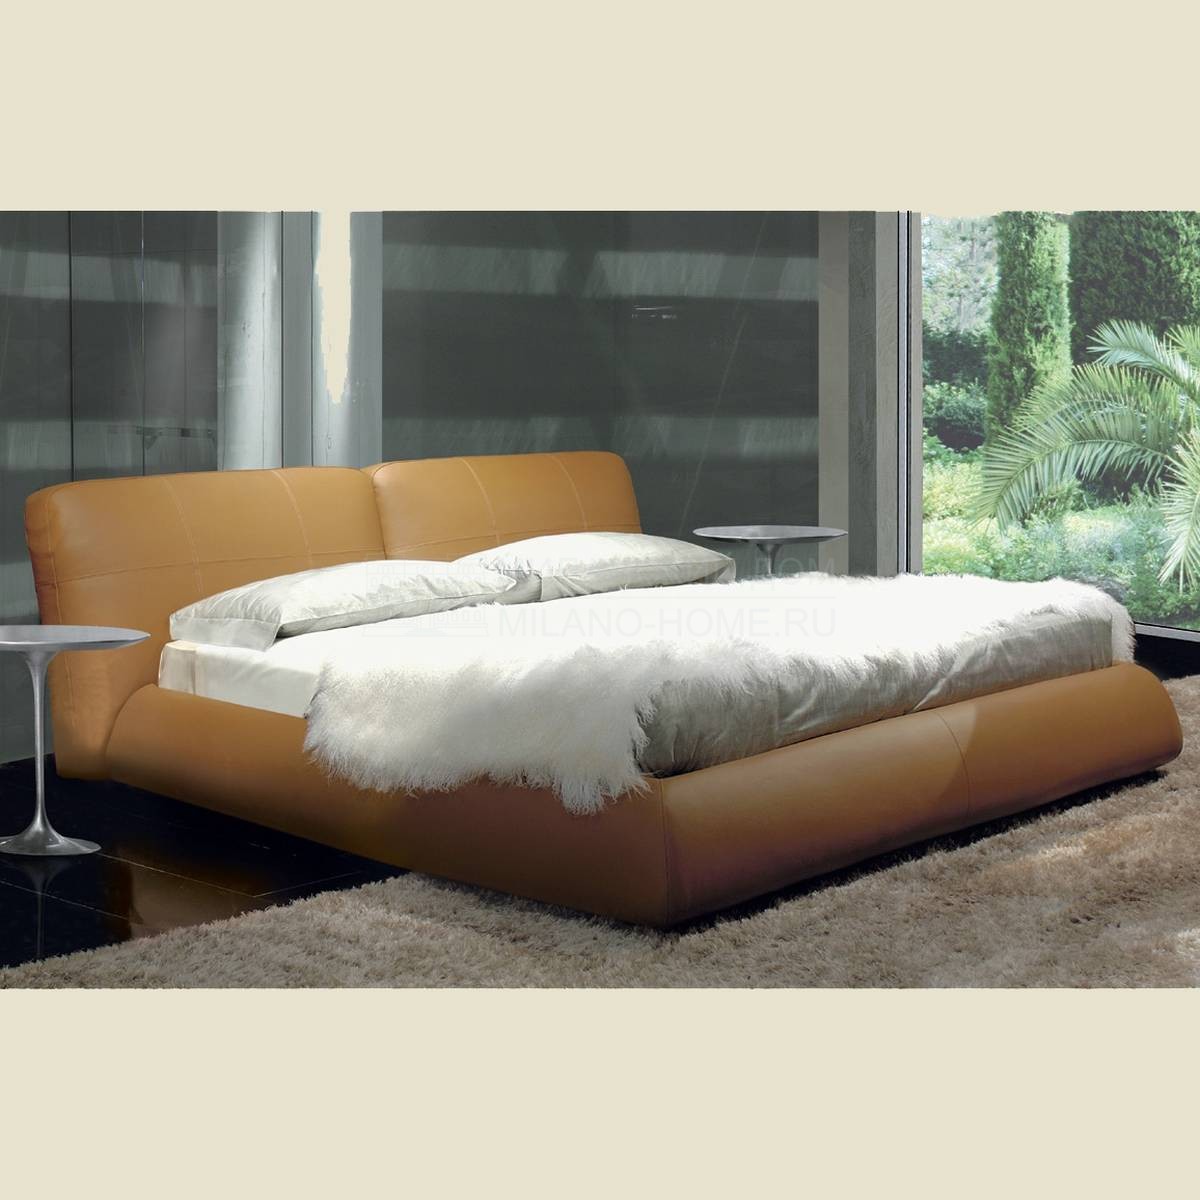 Кровать с мягким изголовьем William/bed из Италии фабрики BESANA